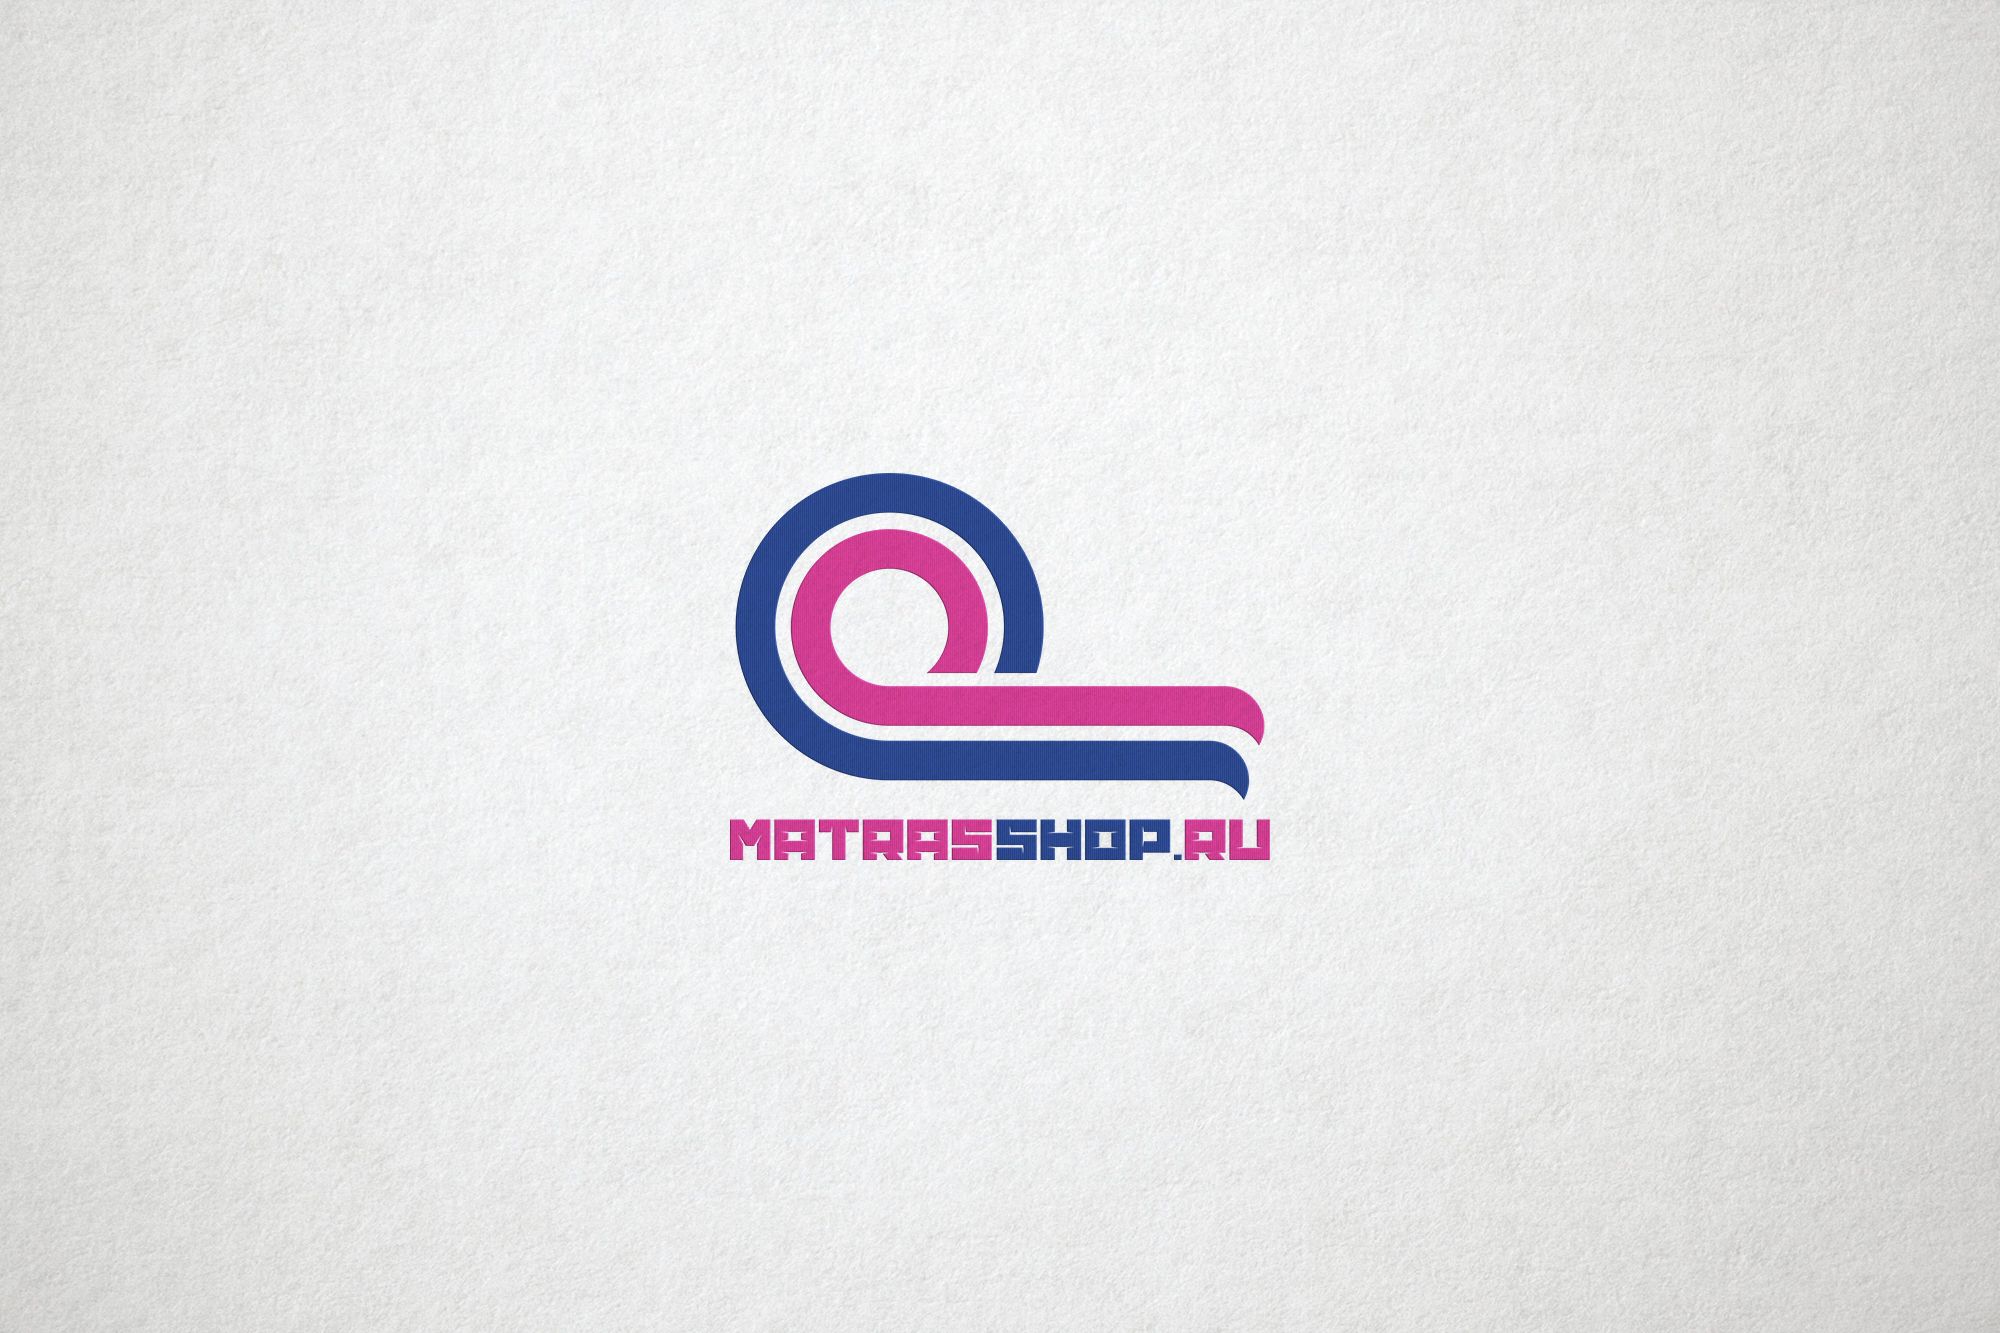 Логотип для Логотип для сети магазинов MATRASSHOP.RU - дизайнер ilim1973